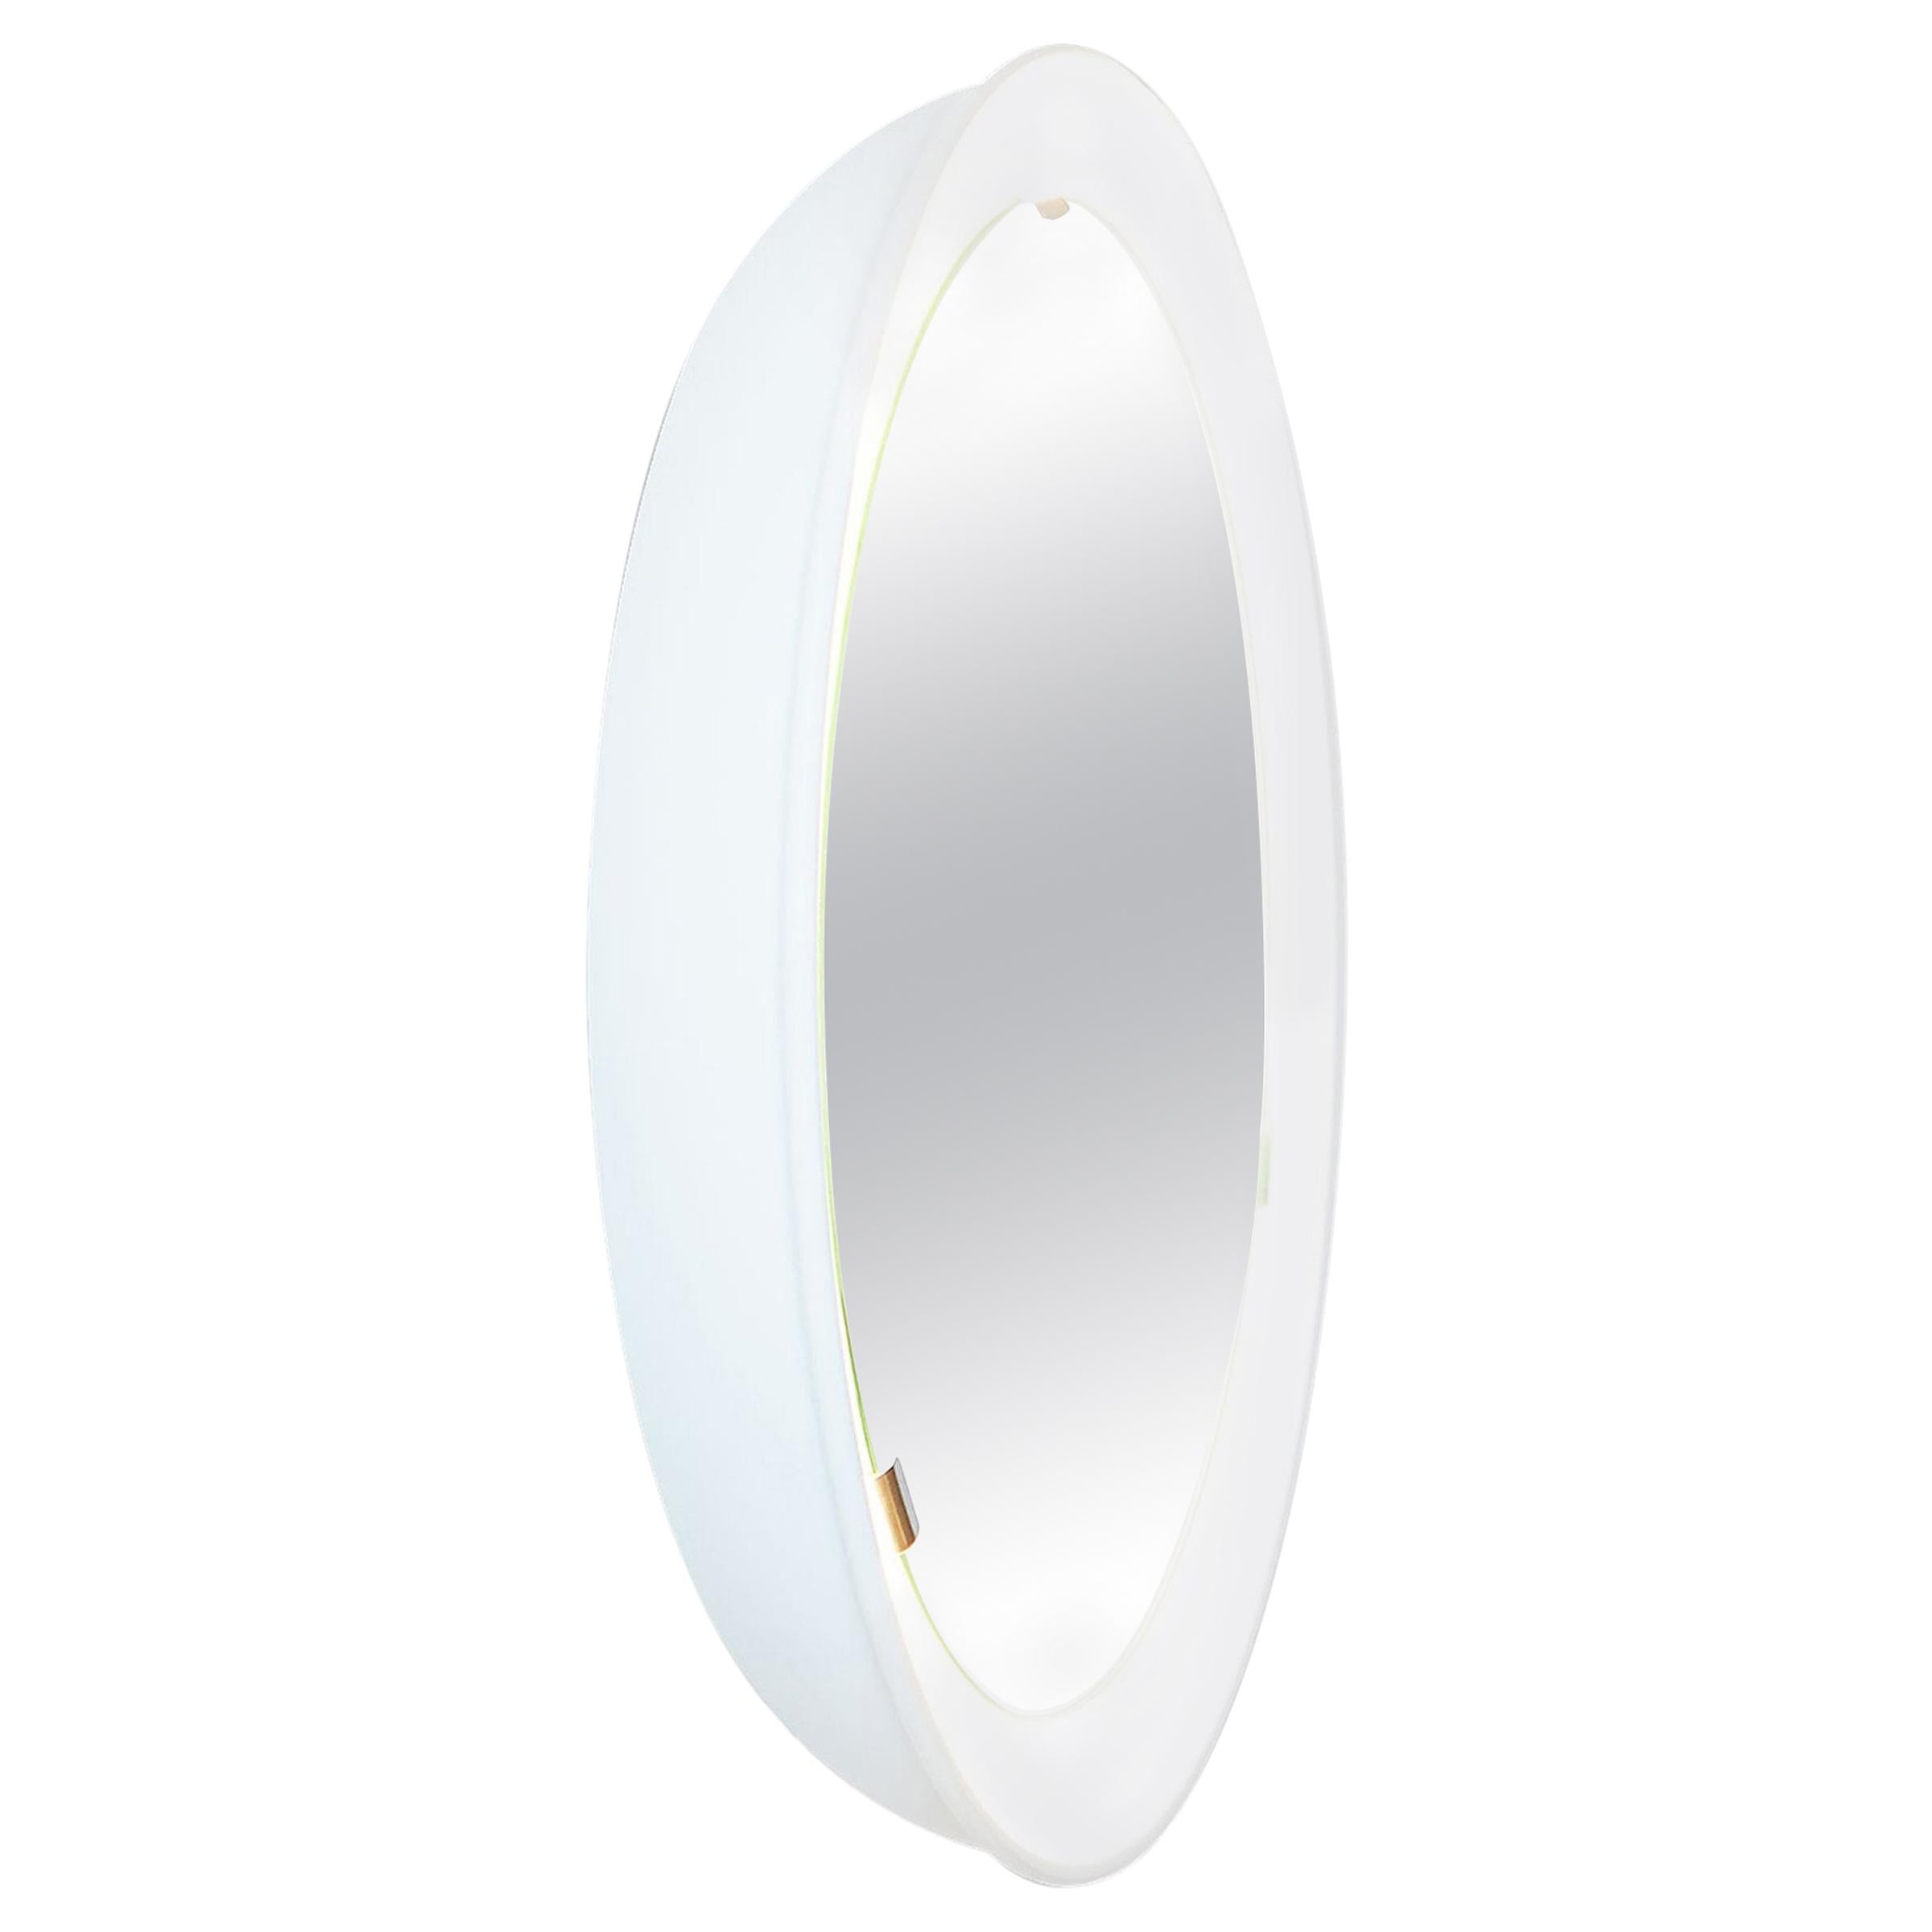 PH-Spiegel, weiß lackiert, Satin matt,  Durchmesser 700 mm, auf/off Pull Cord, Ph